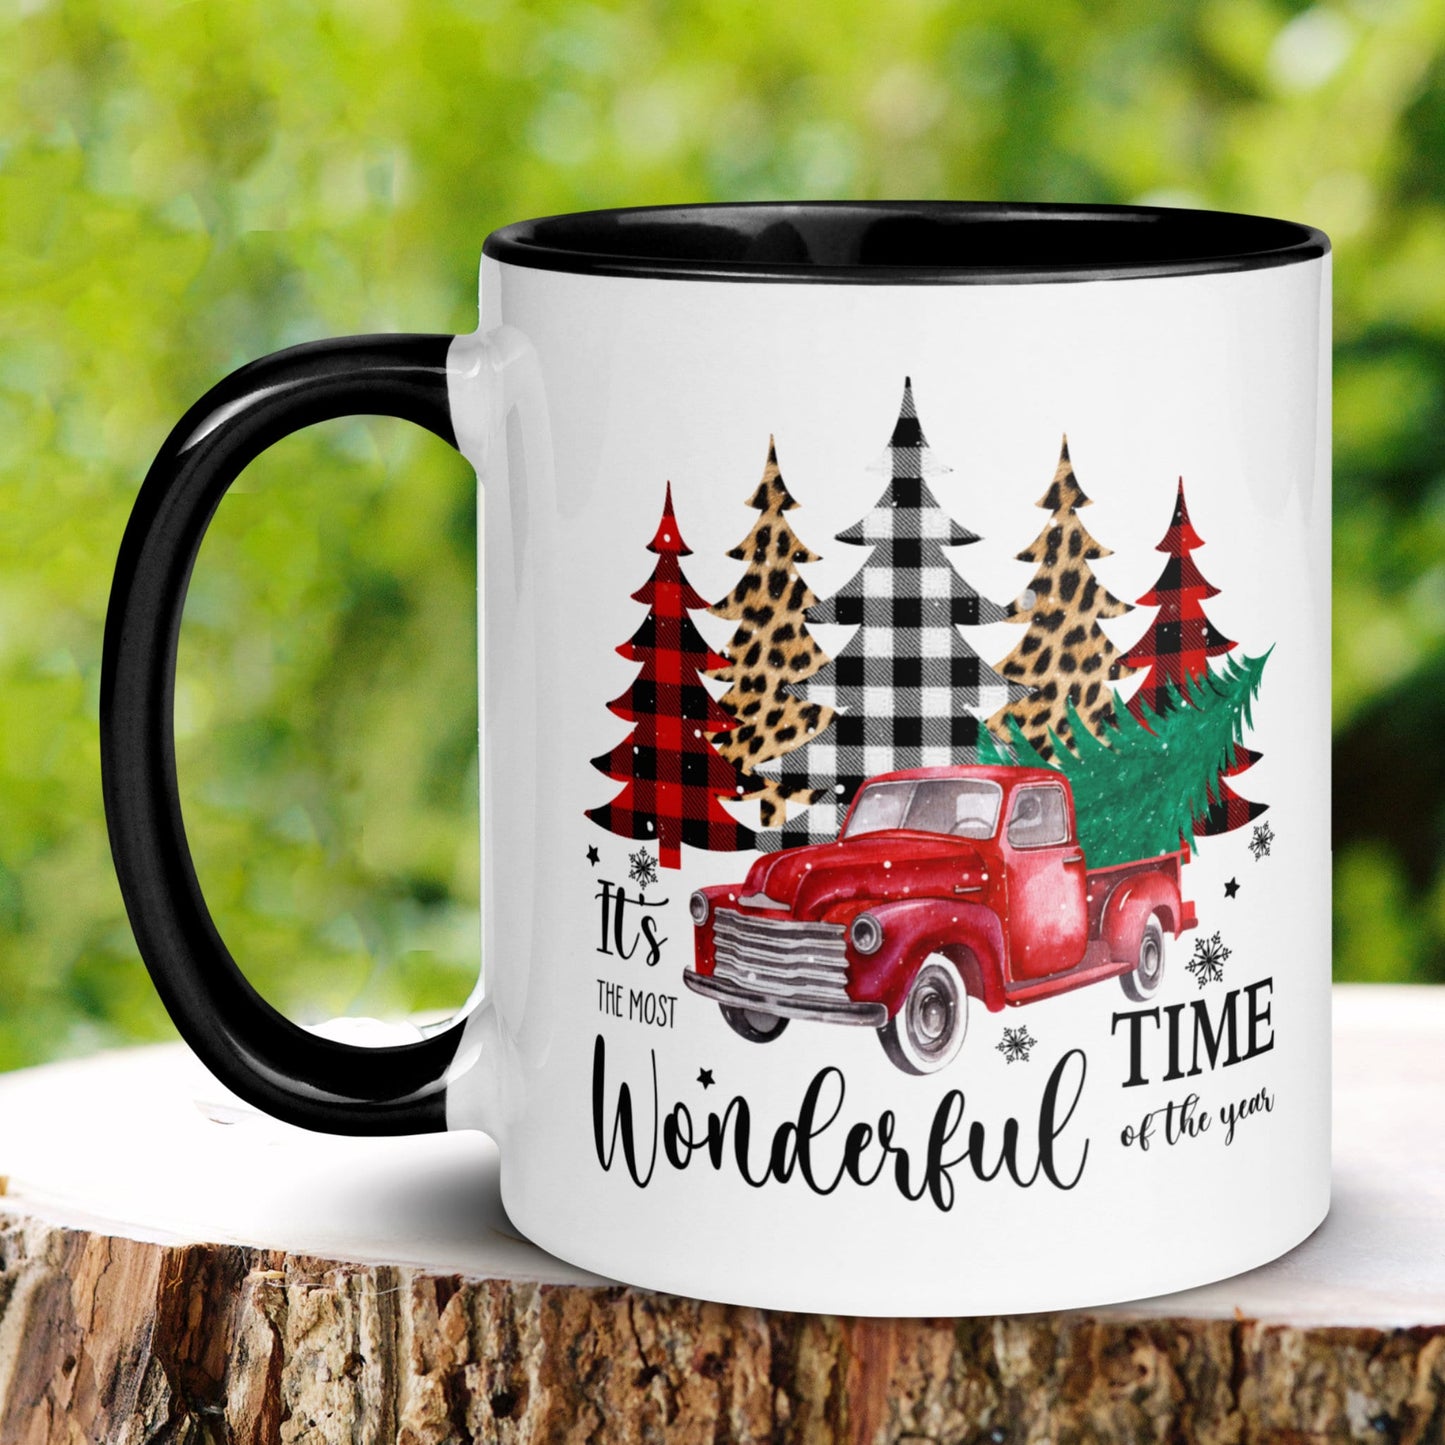 It's The Most Wonderful Time Of The Year, Christmas Gifts, Christmas Mug, Christmas Tree Mug, Funny Coffee Mug, Holiday Gift, Retro Mug 1240 - Zehnaria - WINTER HOLIDAY - Mugs